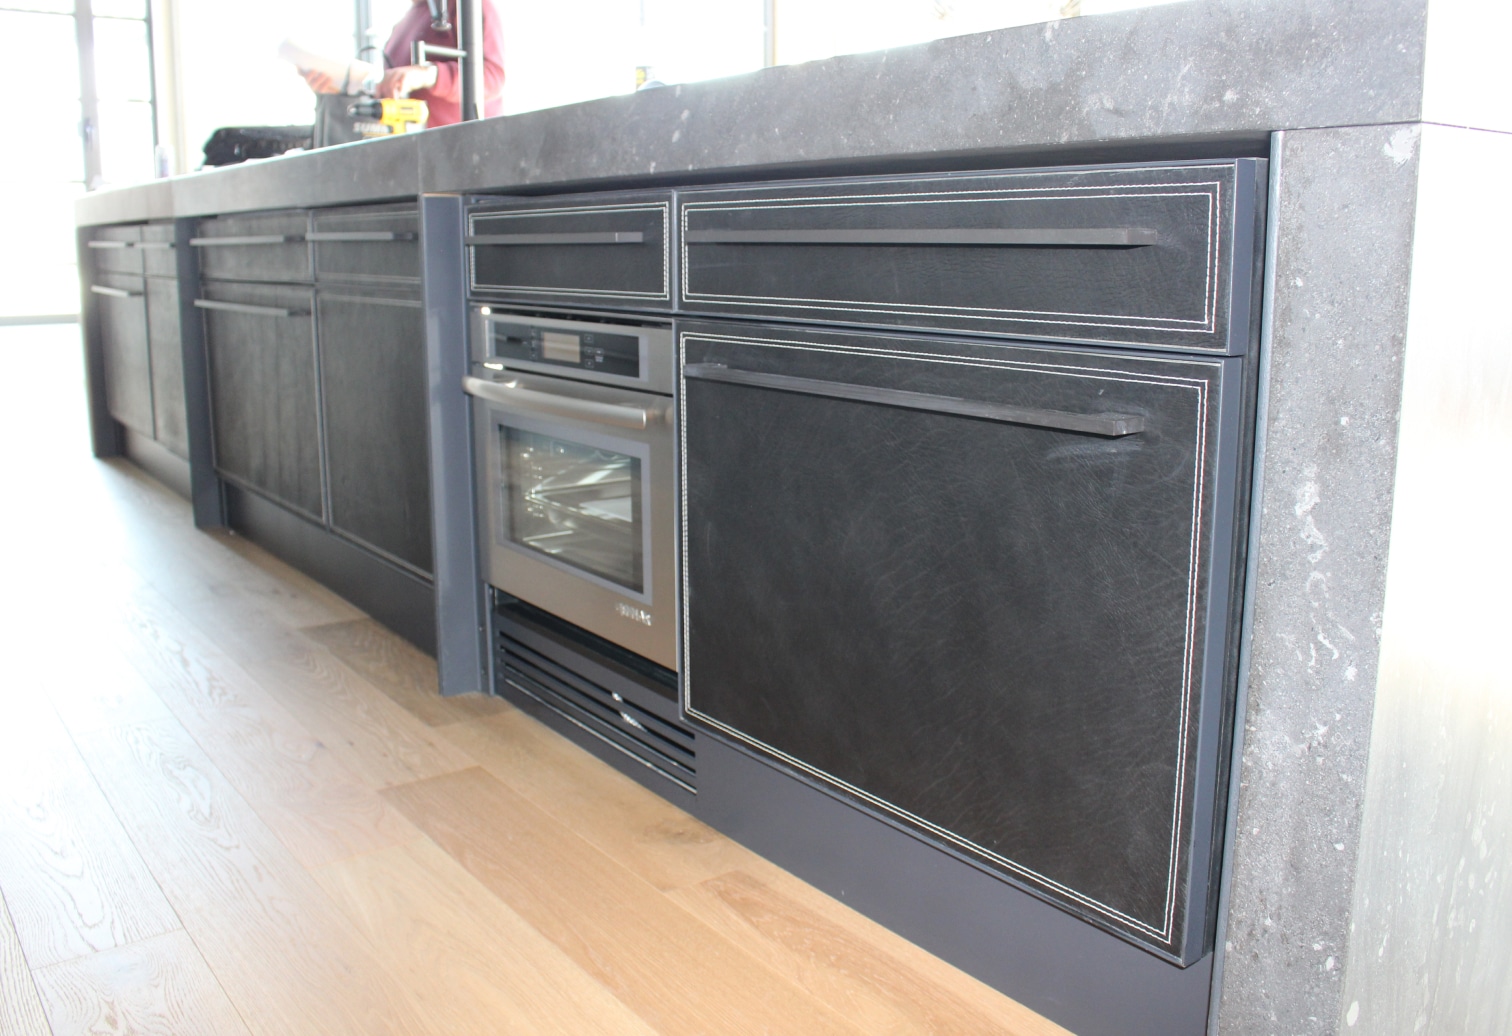 panneaux de tiroirs et d'armoire d'un ilot de cuisine recouverts en cuir avec surpiqures contrastées